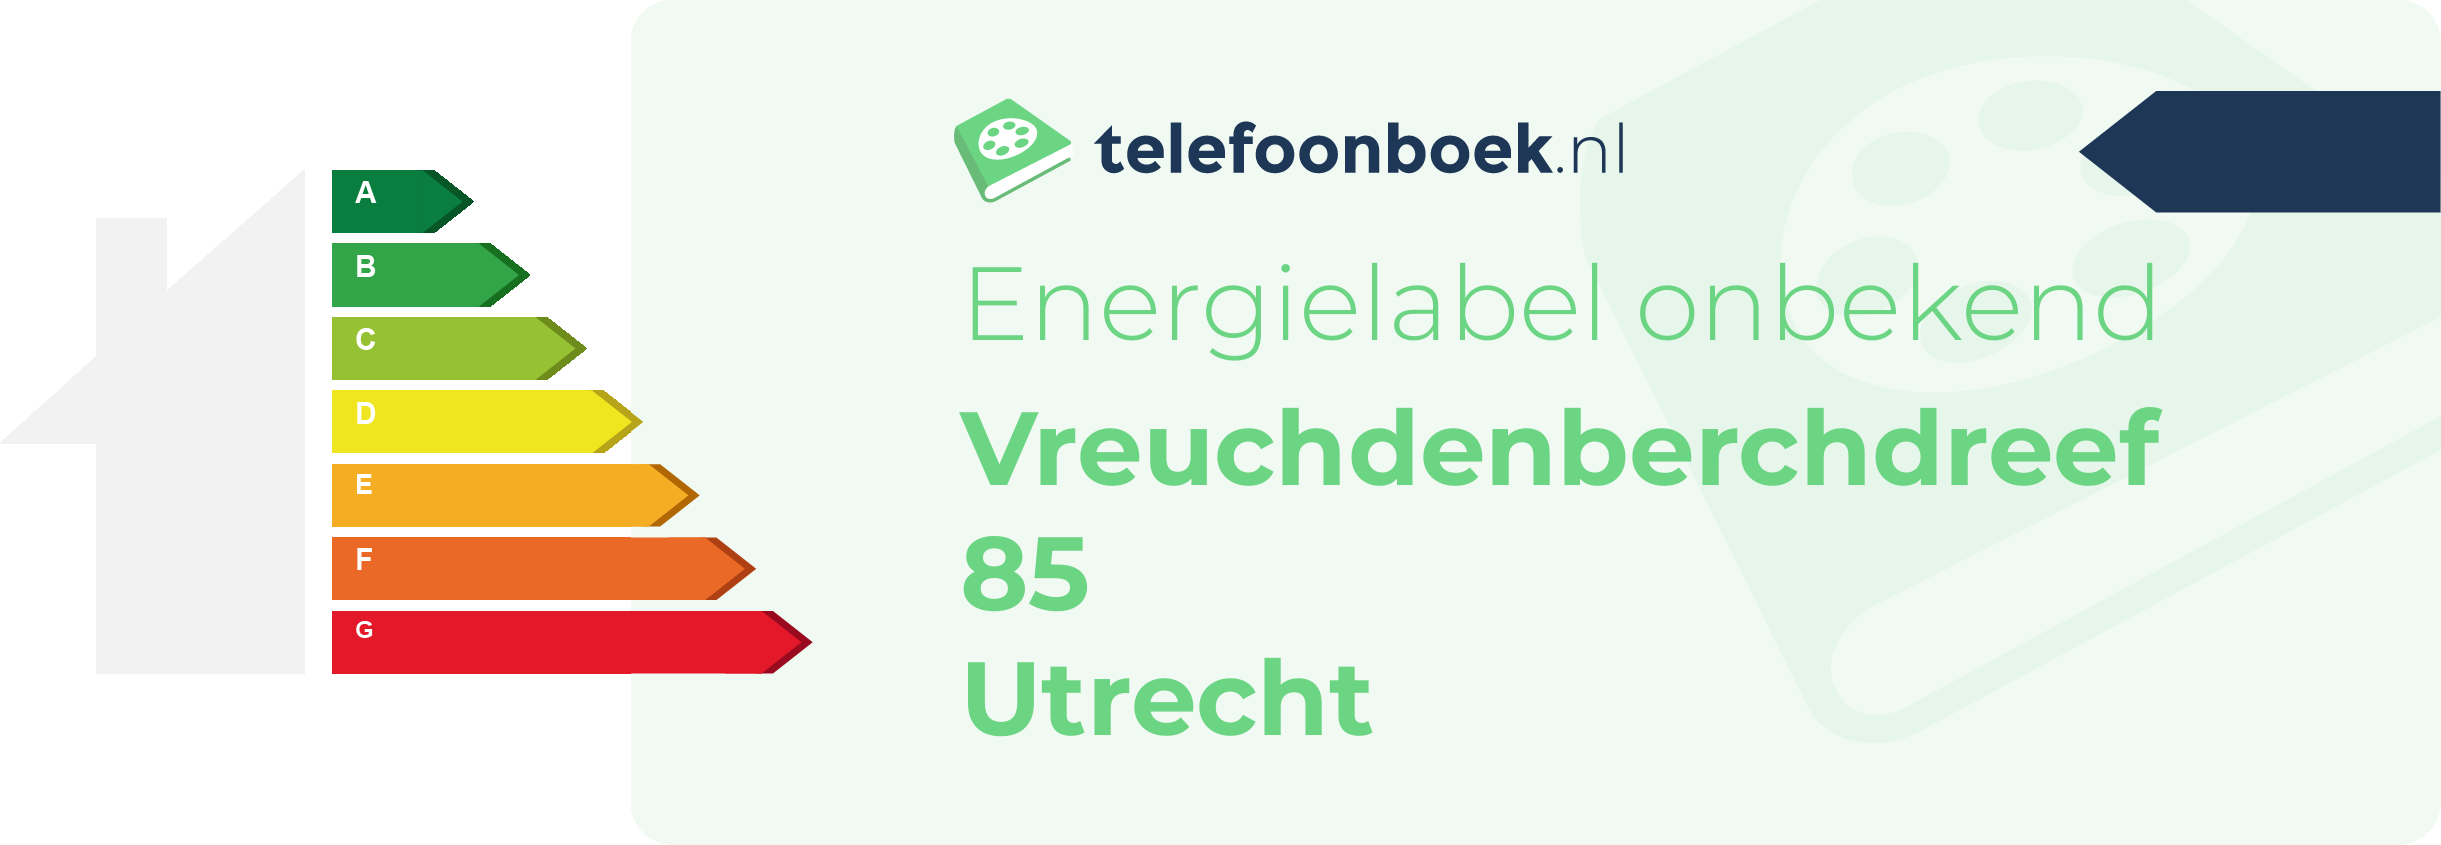 Energielabel Vreuchdenberchdreef 85 Utrecht